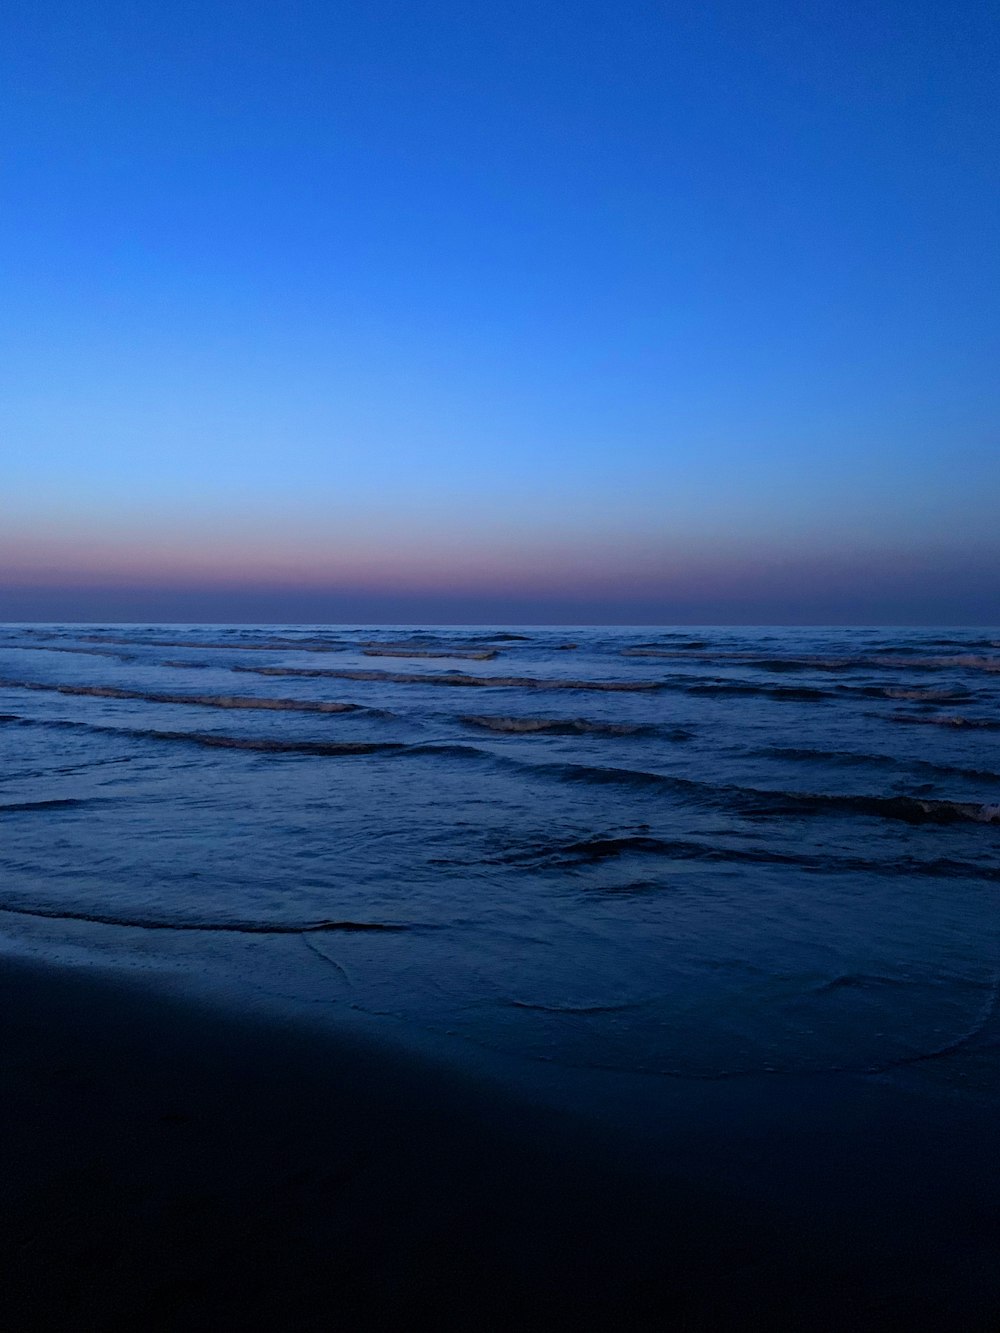 una persona che cammina sulla spiaggia al tramonto